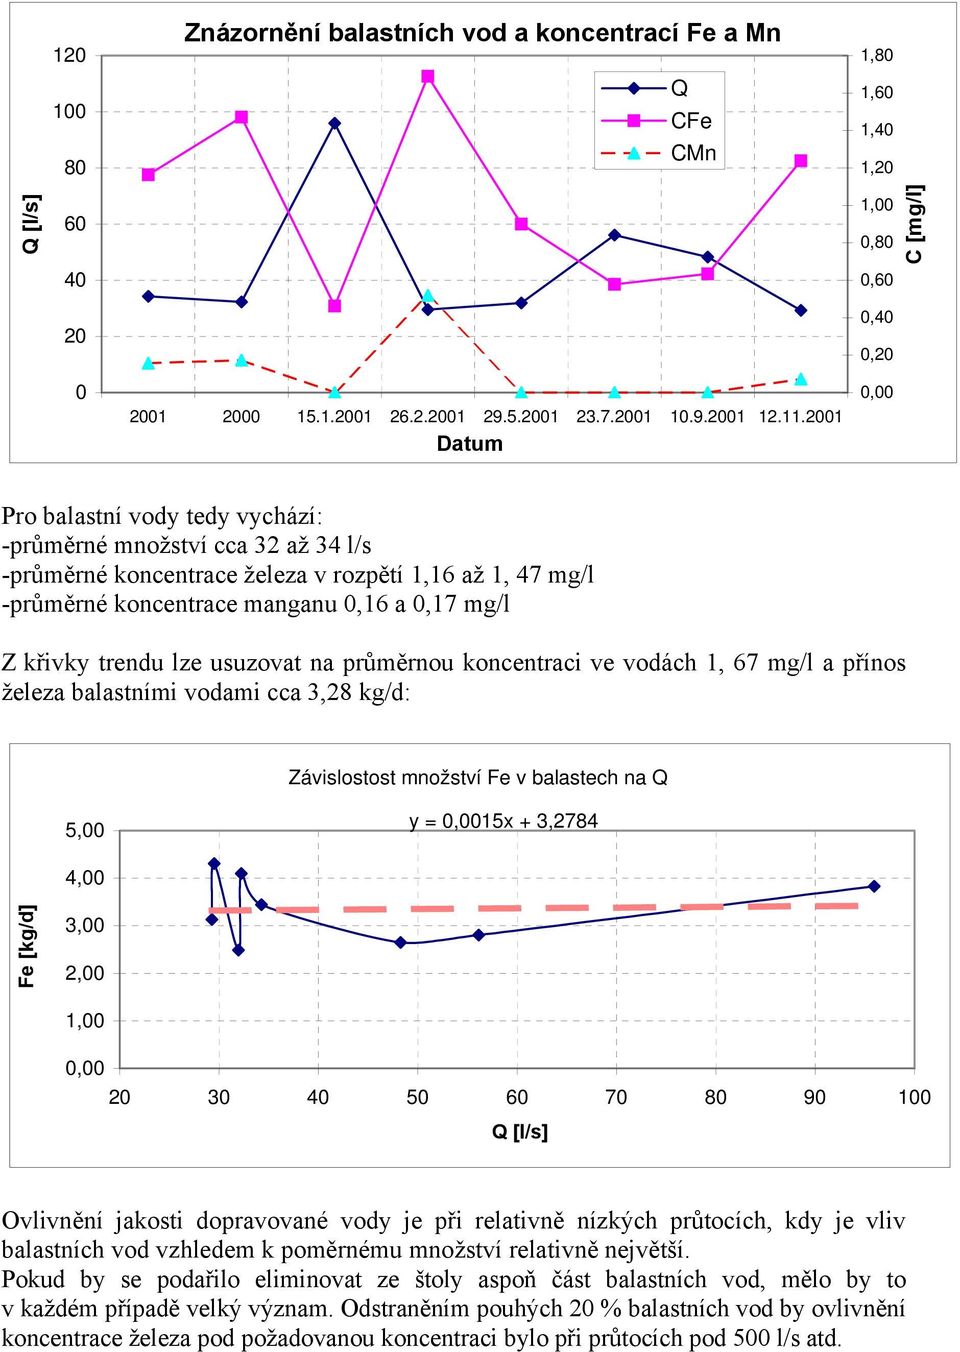 křivky trendu lze usuzovat na průměrnou koncentraci ve vodách 1, 67 mg/l a přínos železa balastními vodami cca 3,28 kg/d: Závislostost množství Fe v balastech na Q 5,00 y = 0,0015x + 3,2784 4,00 Fe